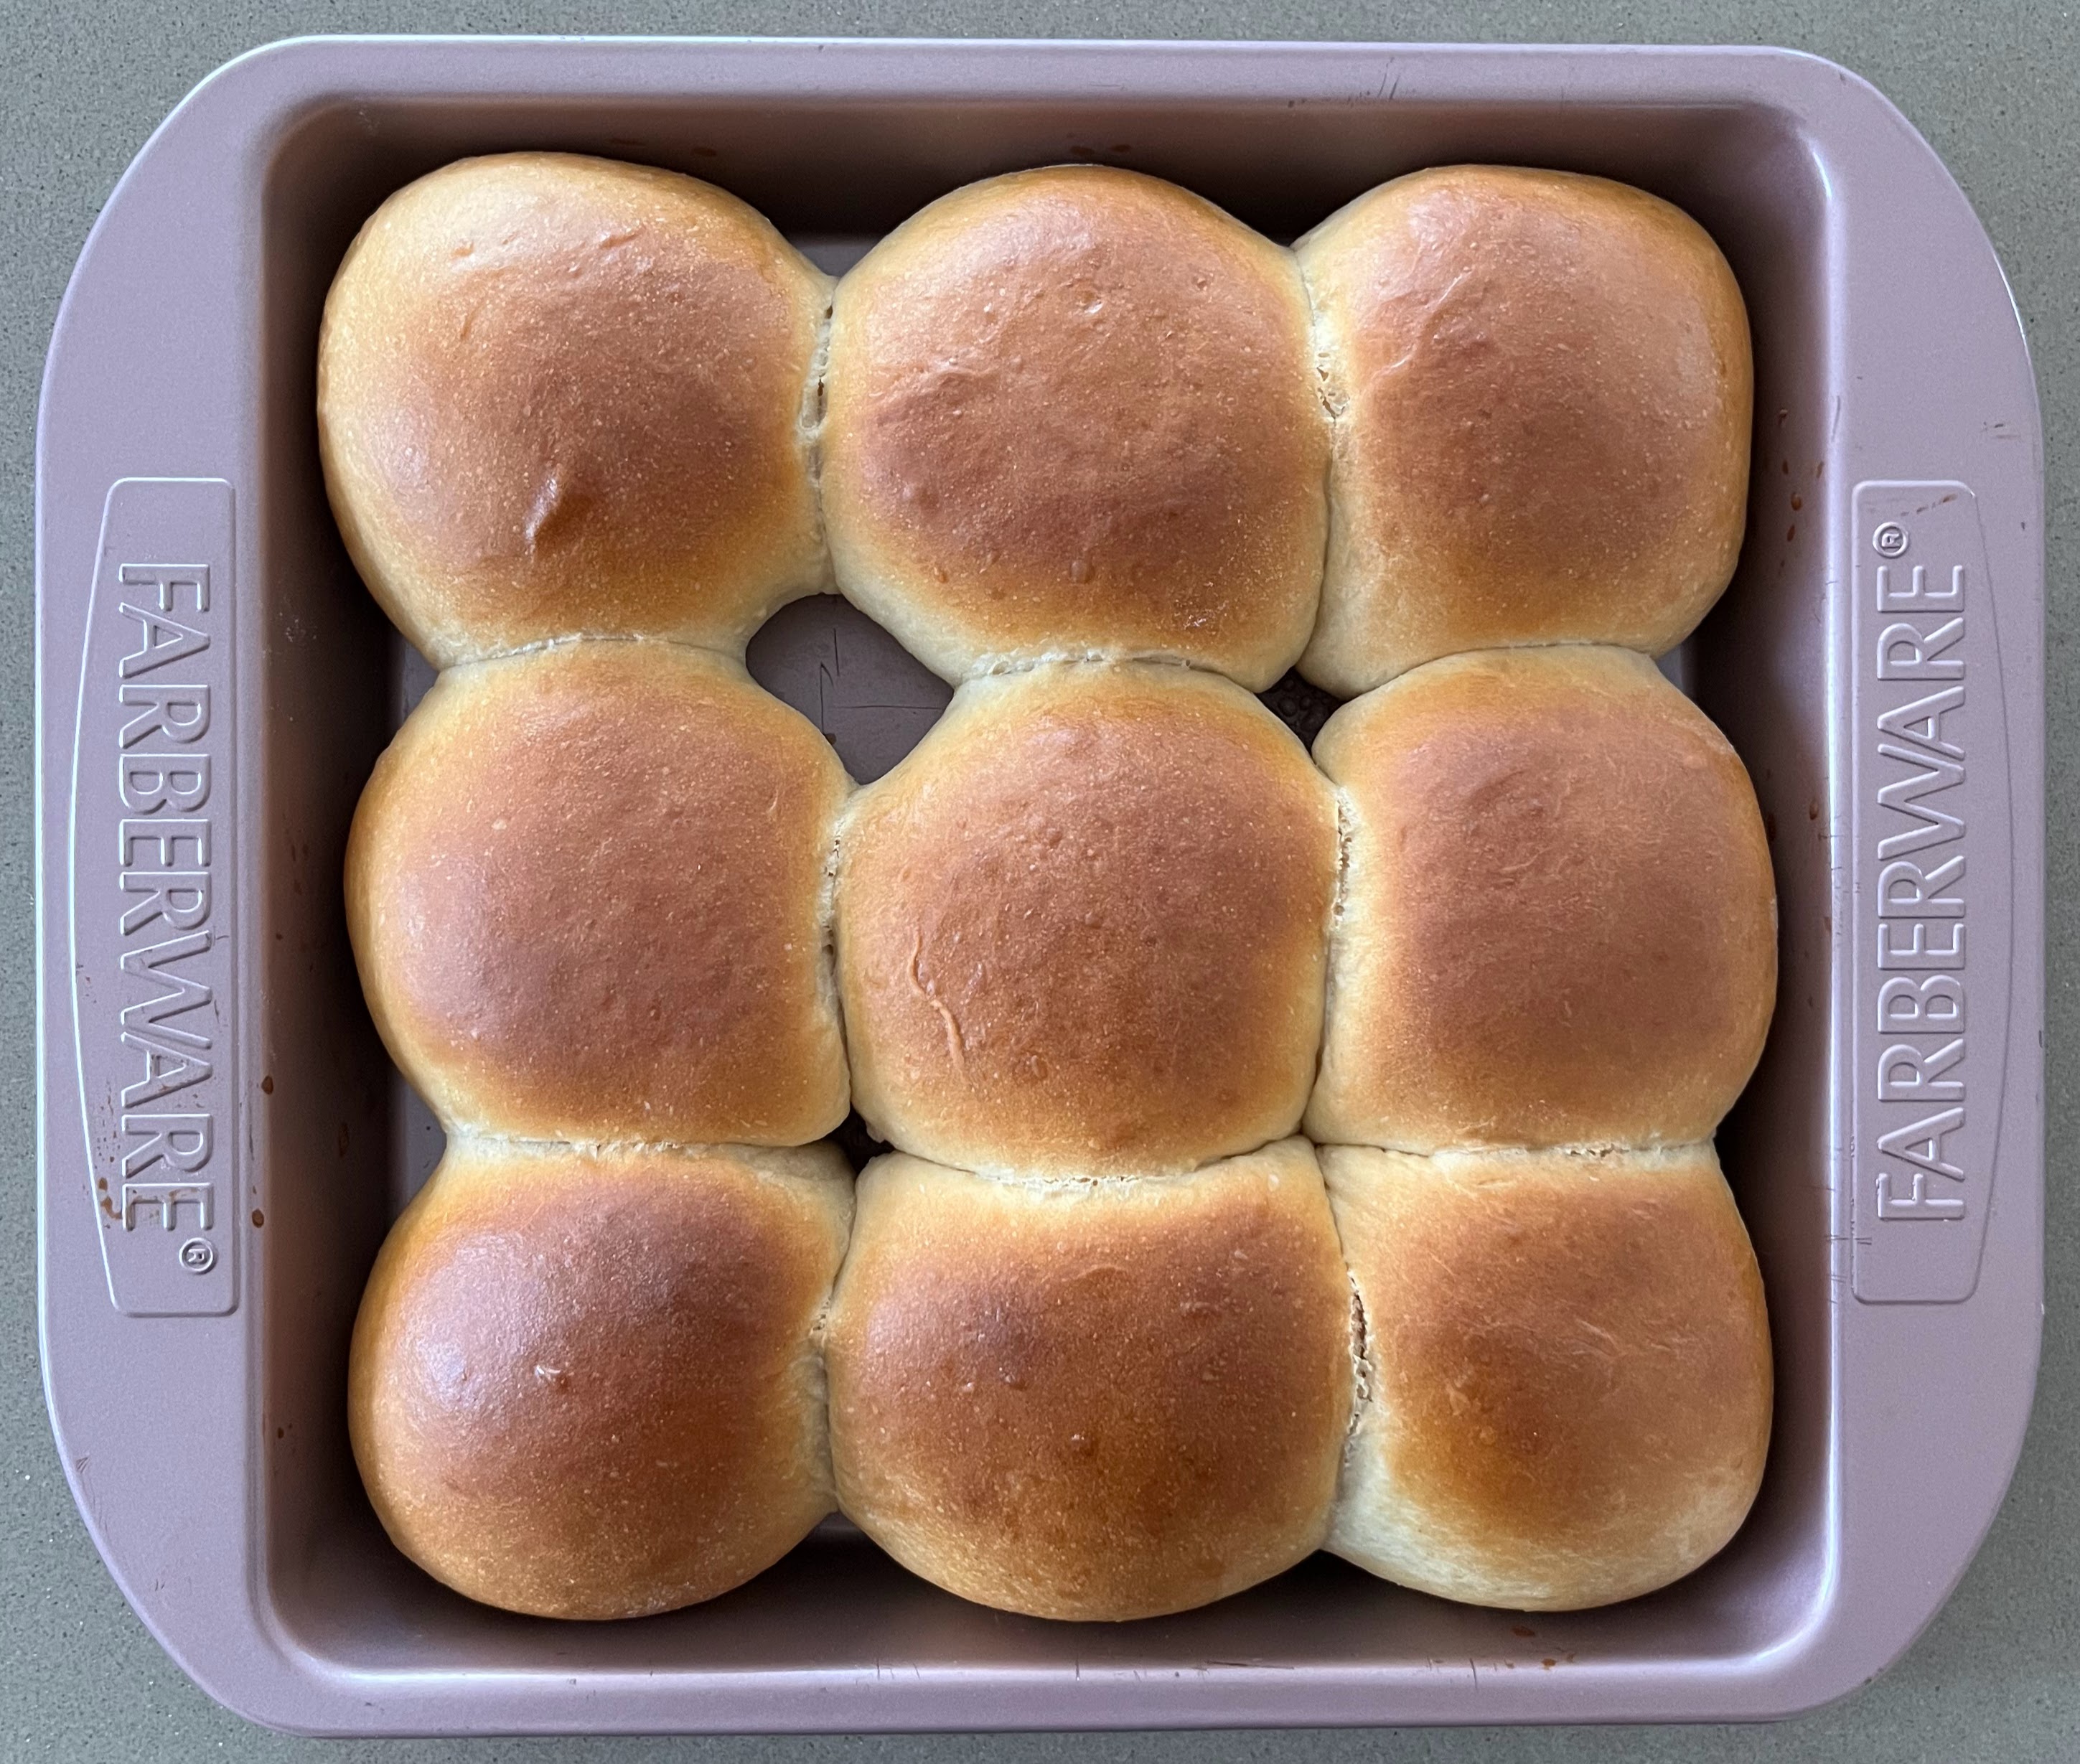 Milk bread rolls, using a tangzhong dough.